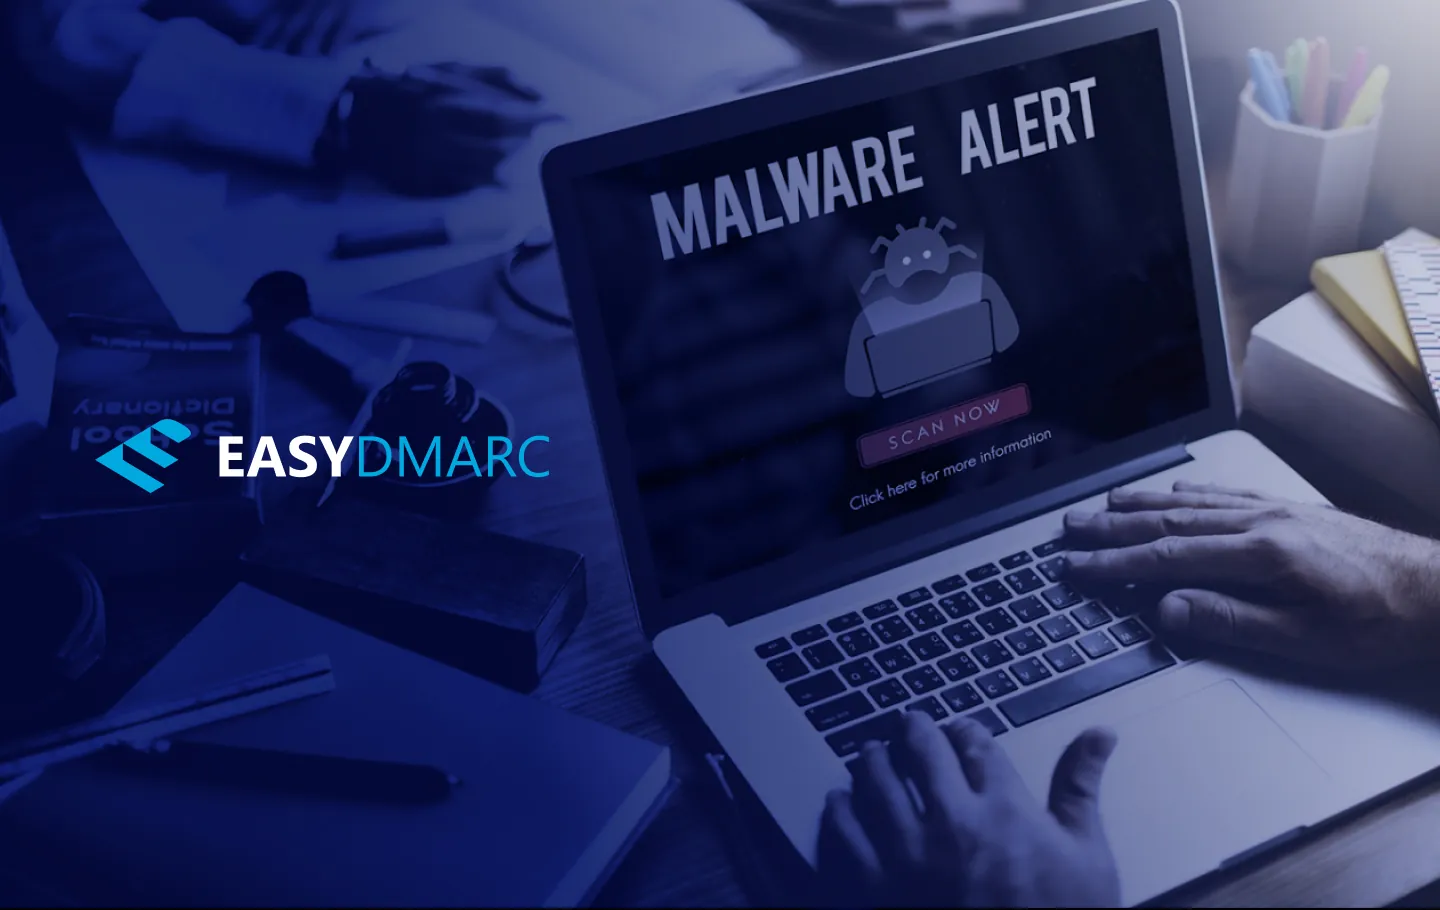 "Malware Alert" written on a laptop screen, a person typing on it's keyboard, EasyDMARC logo on the left side